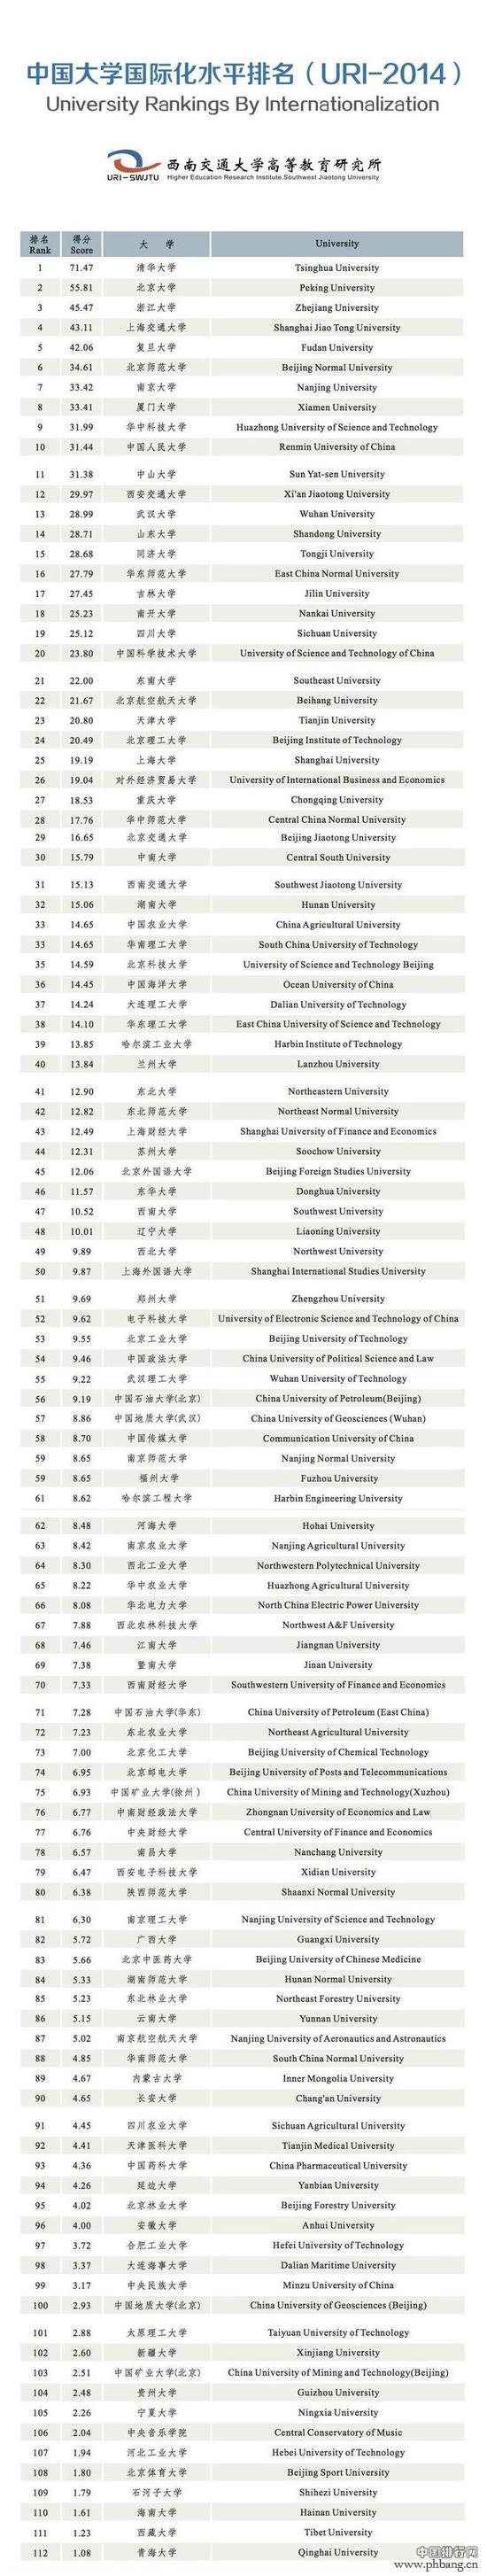 中国大学国际化水平排名(2014年全名单)